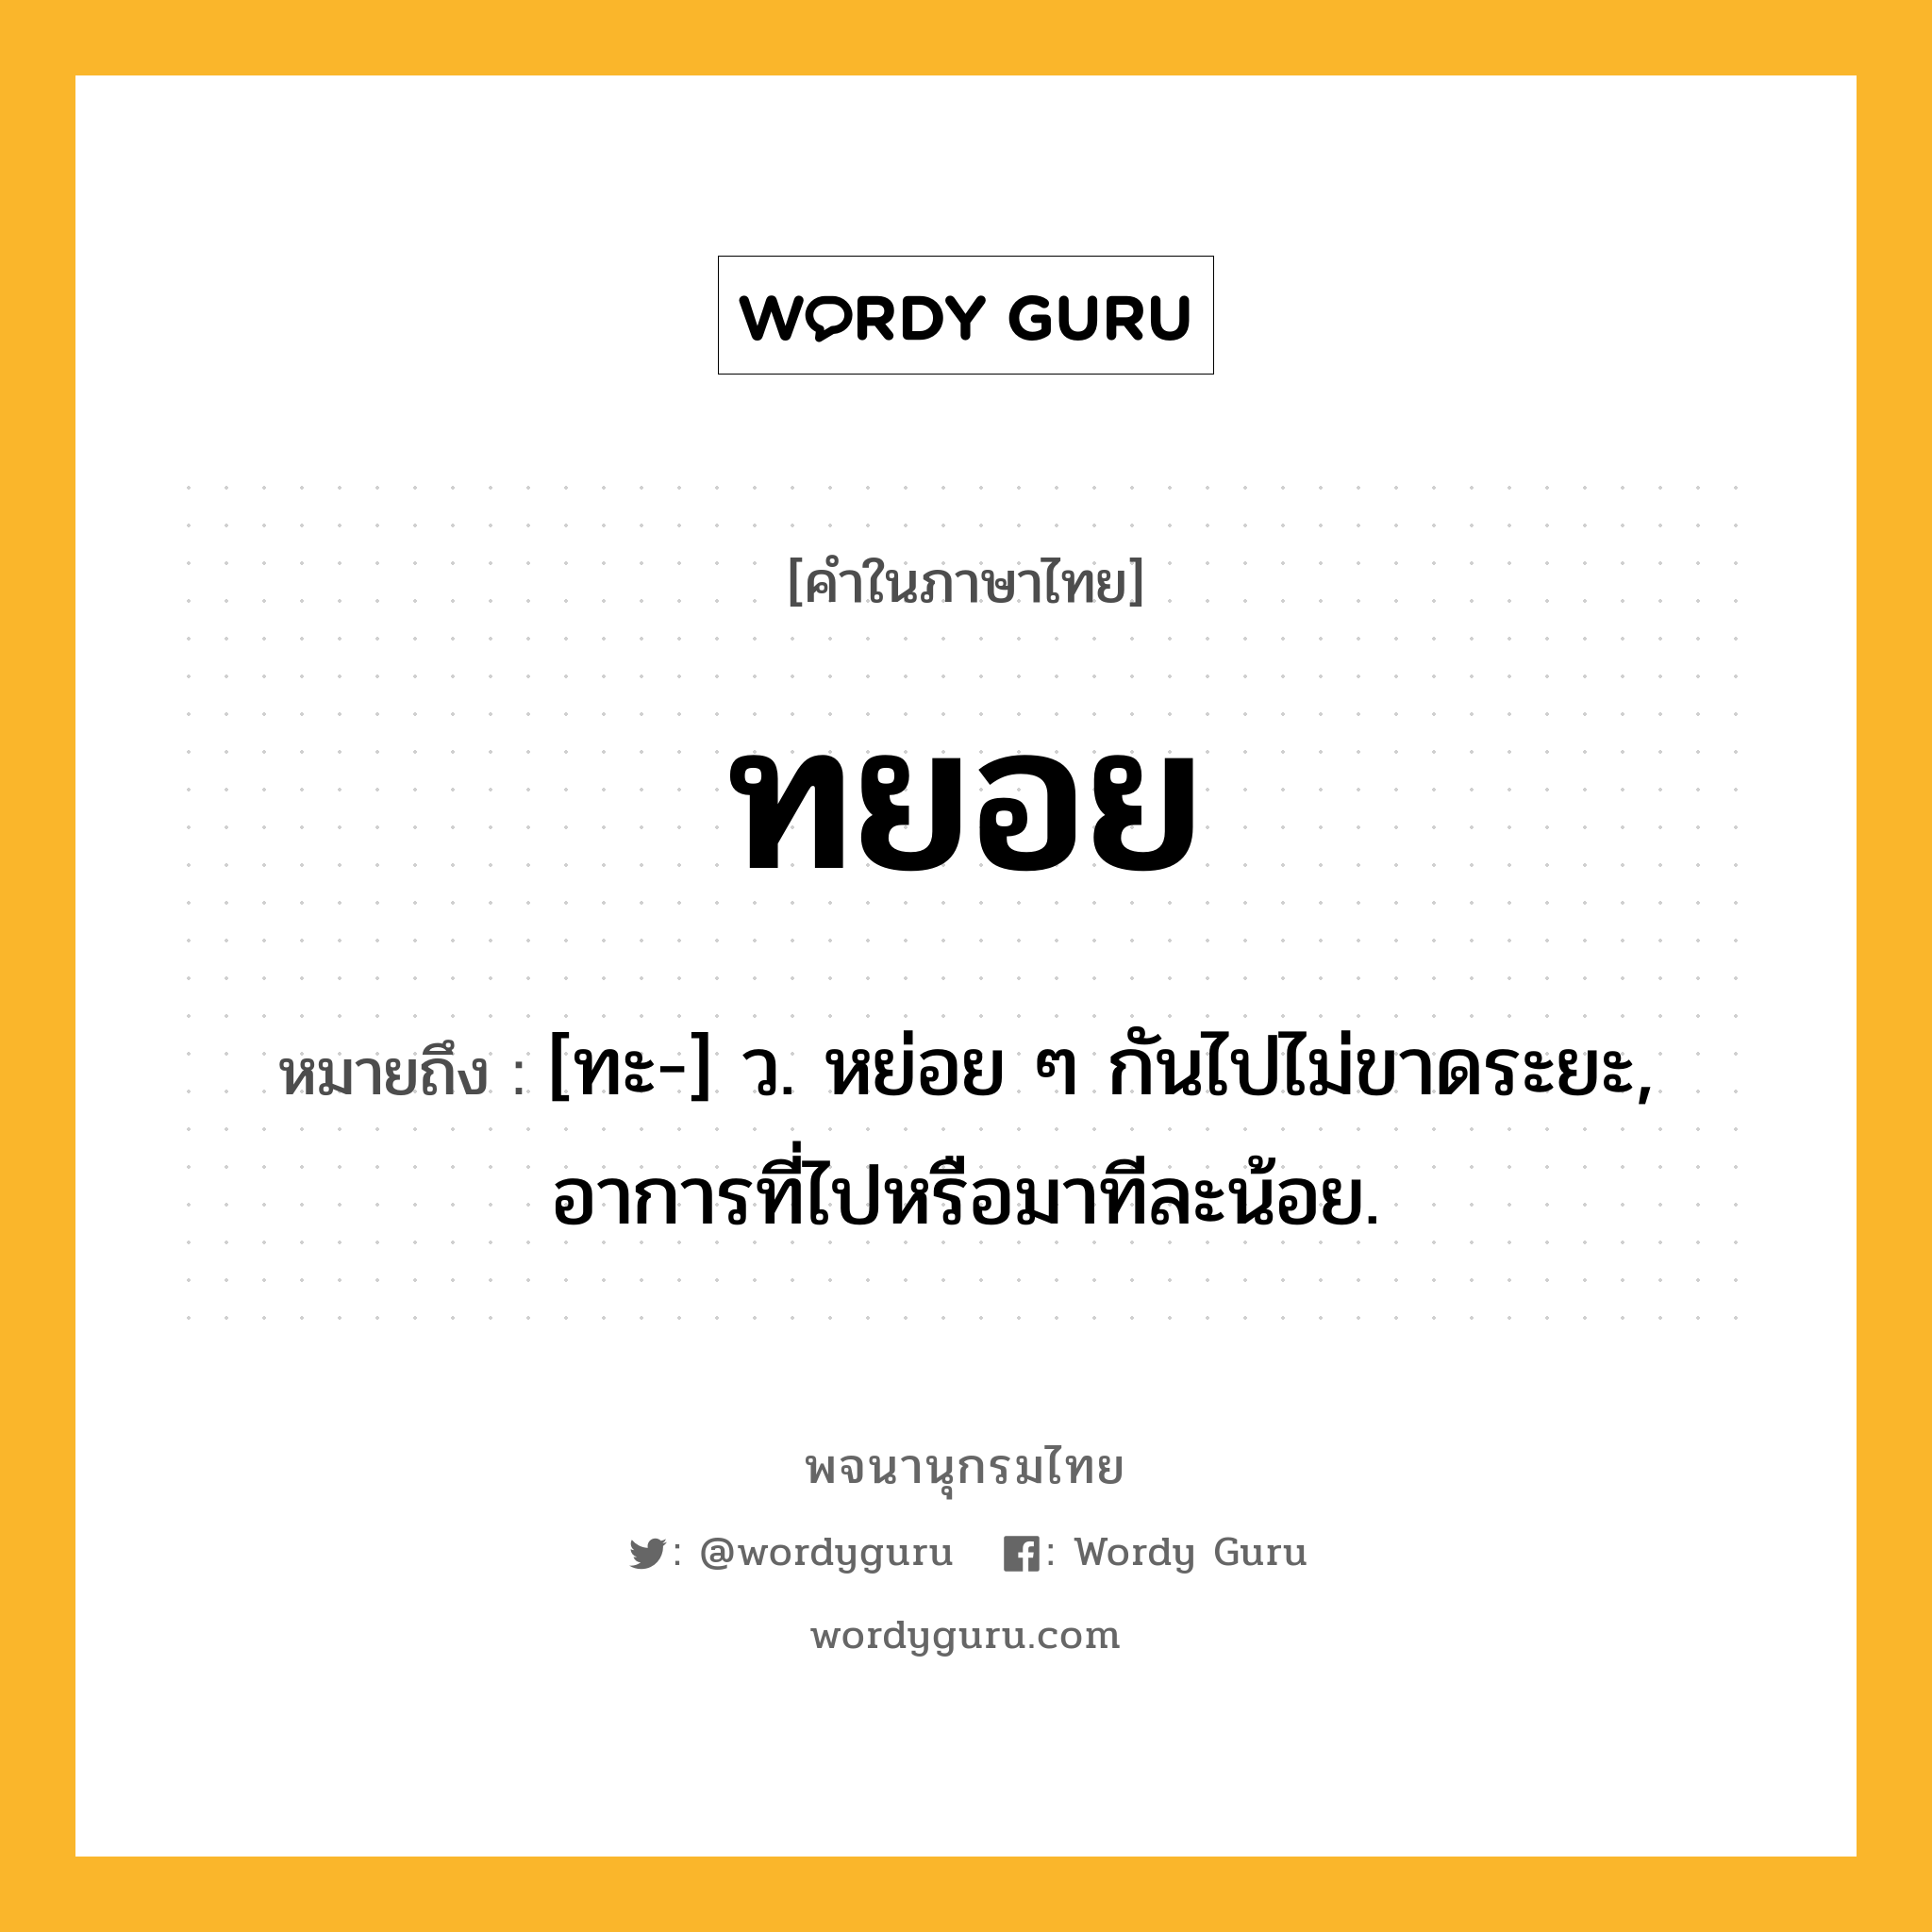 ทยอย ความหมาย หมายถึงอะไร?, คำในภาษาไทย ทยอย หมายถึง [ทะ-] ว. หย่อย ๆ กันไปไม่ขาดระยะ, อาการที่ไปหรือมาทีละน้อย.